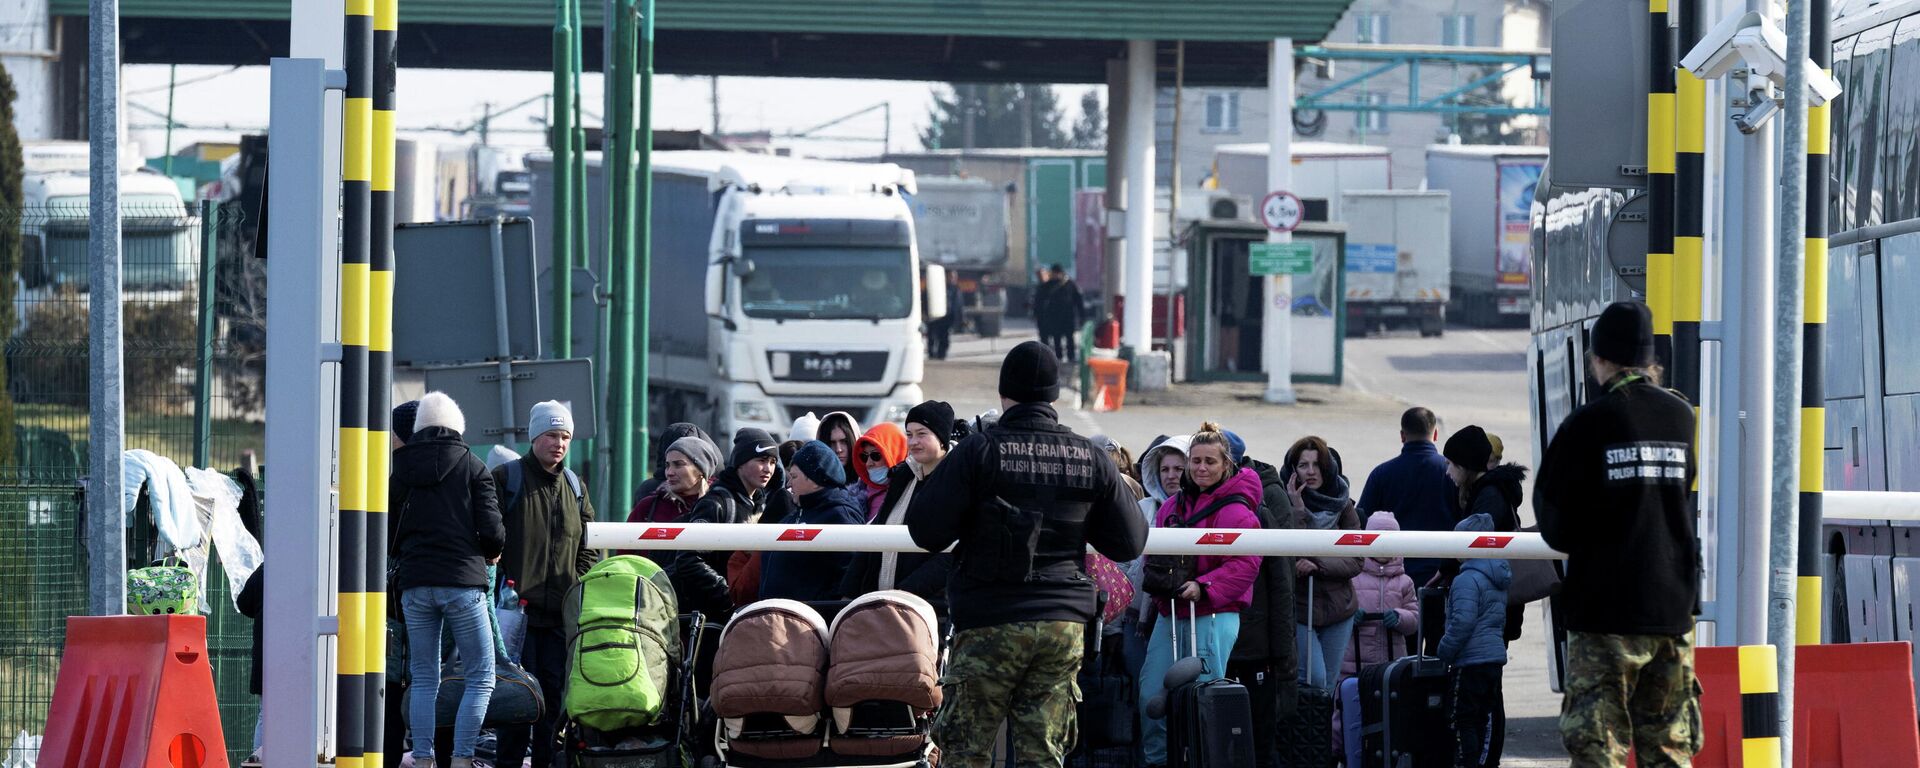 Люди на пограничном переходе между Польшей и Украиной, 25 февраля 2022 года - Sputnik Азербайджан, 1920, 28.02.2022